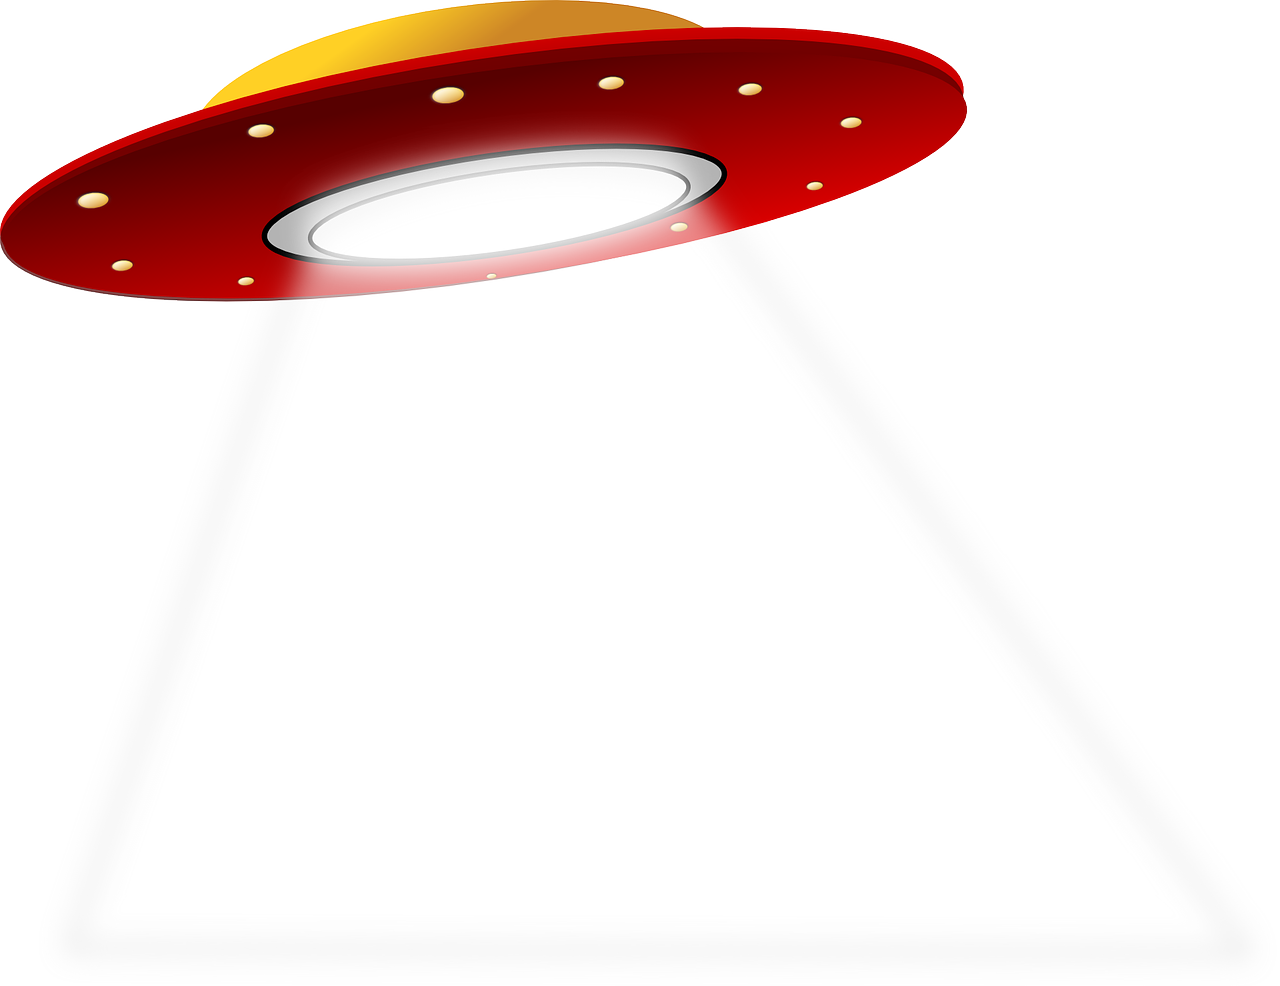 an ufo